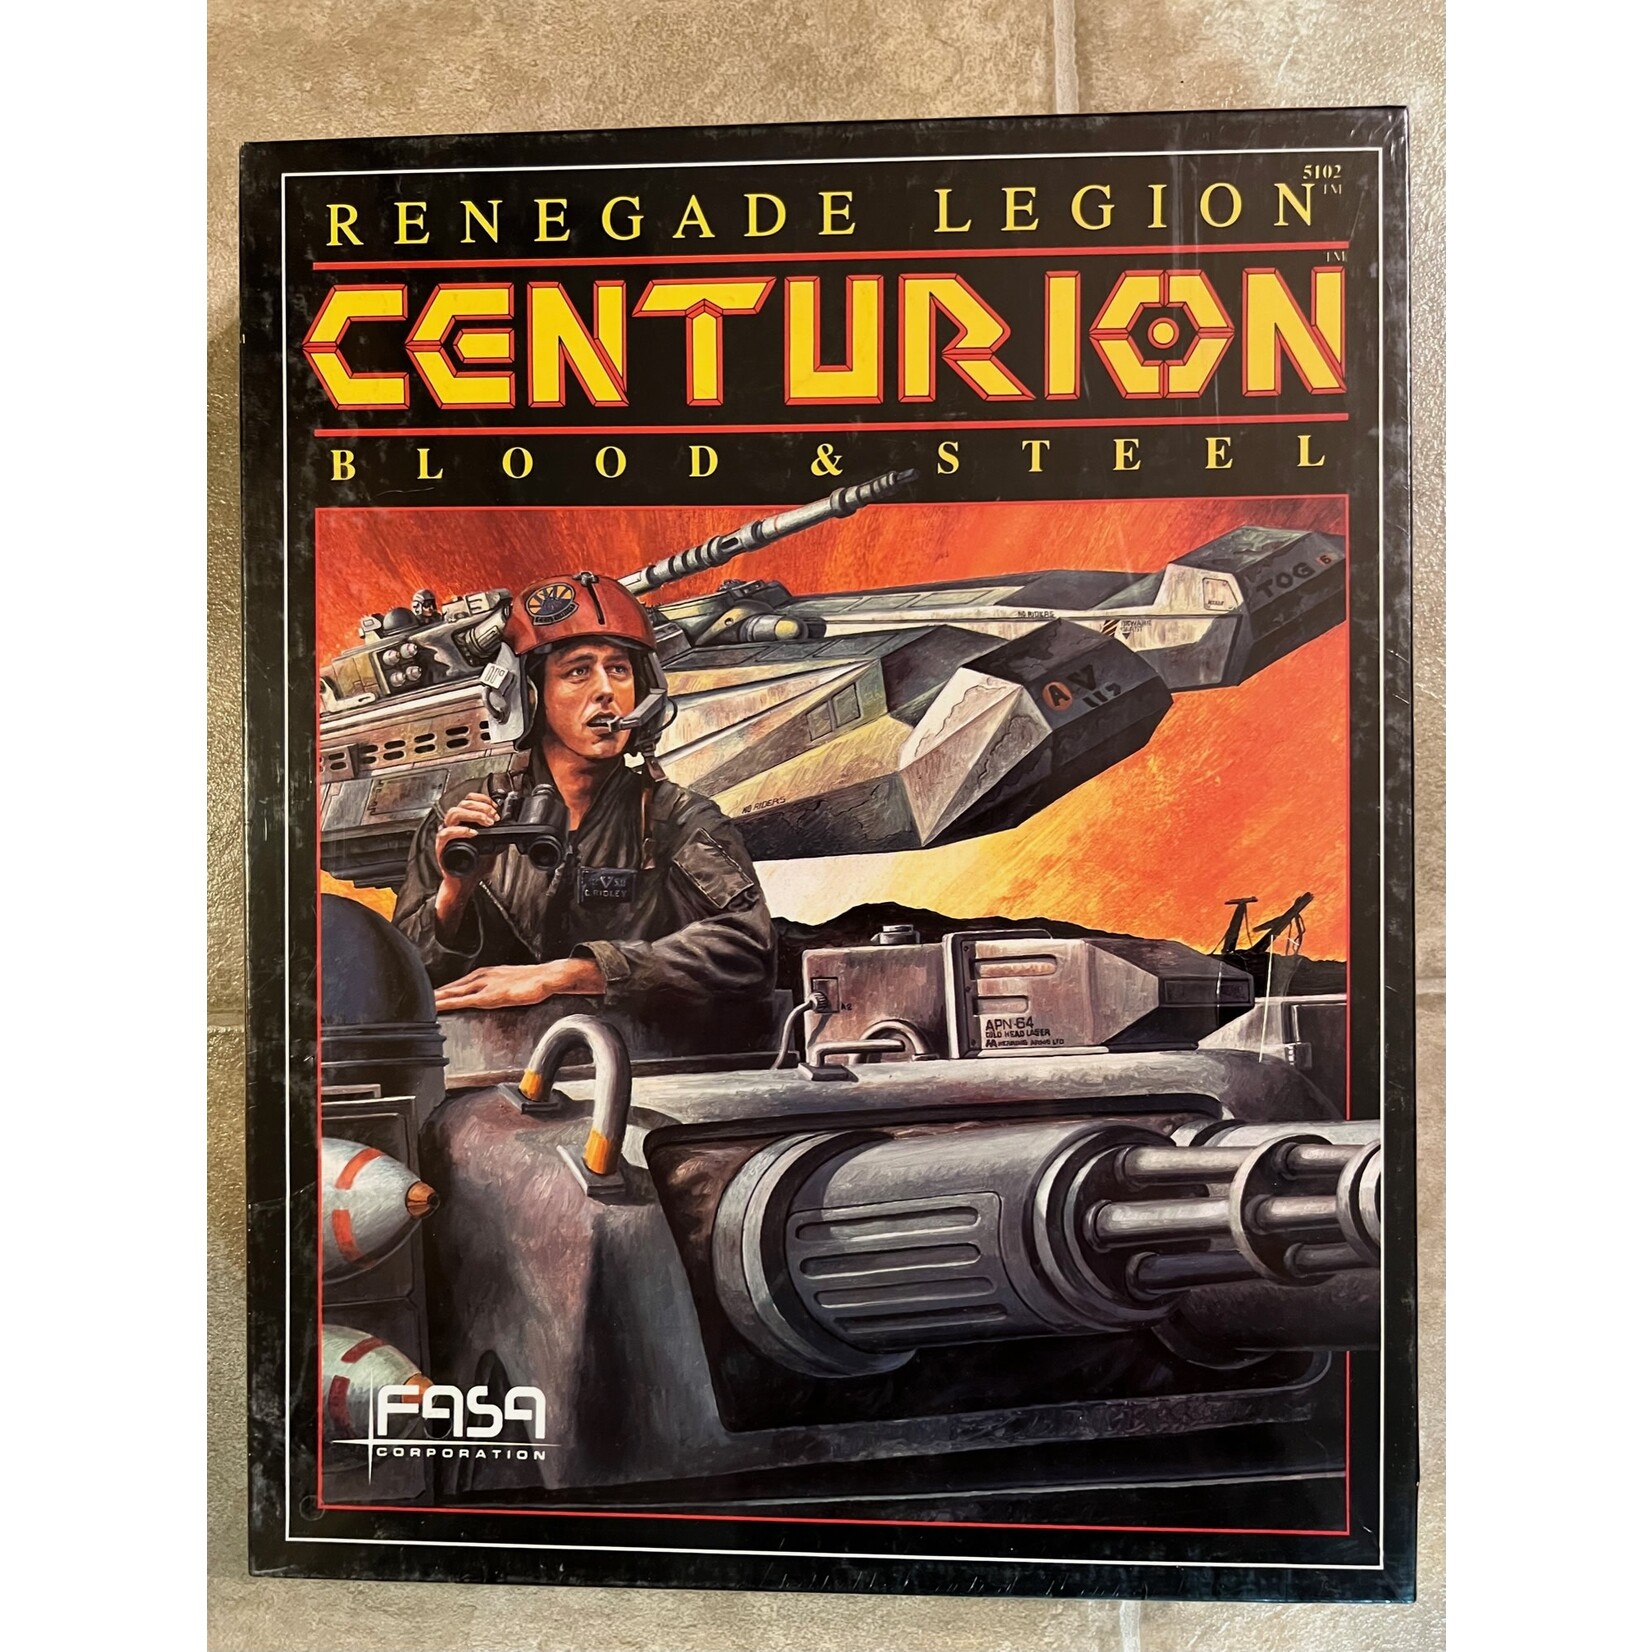 Renegade Legion Centurion: Blood & Steel (1988)